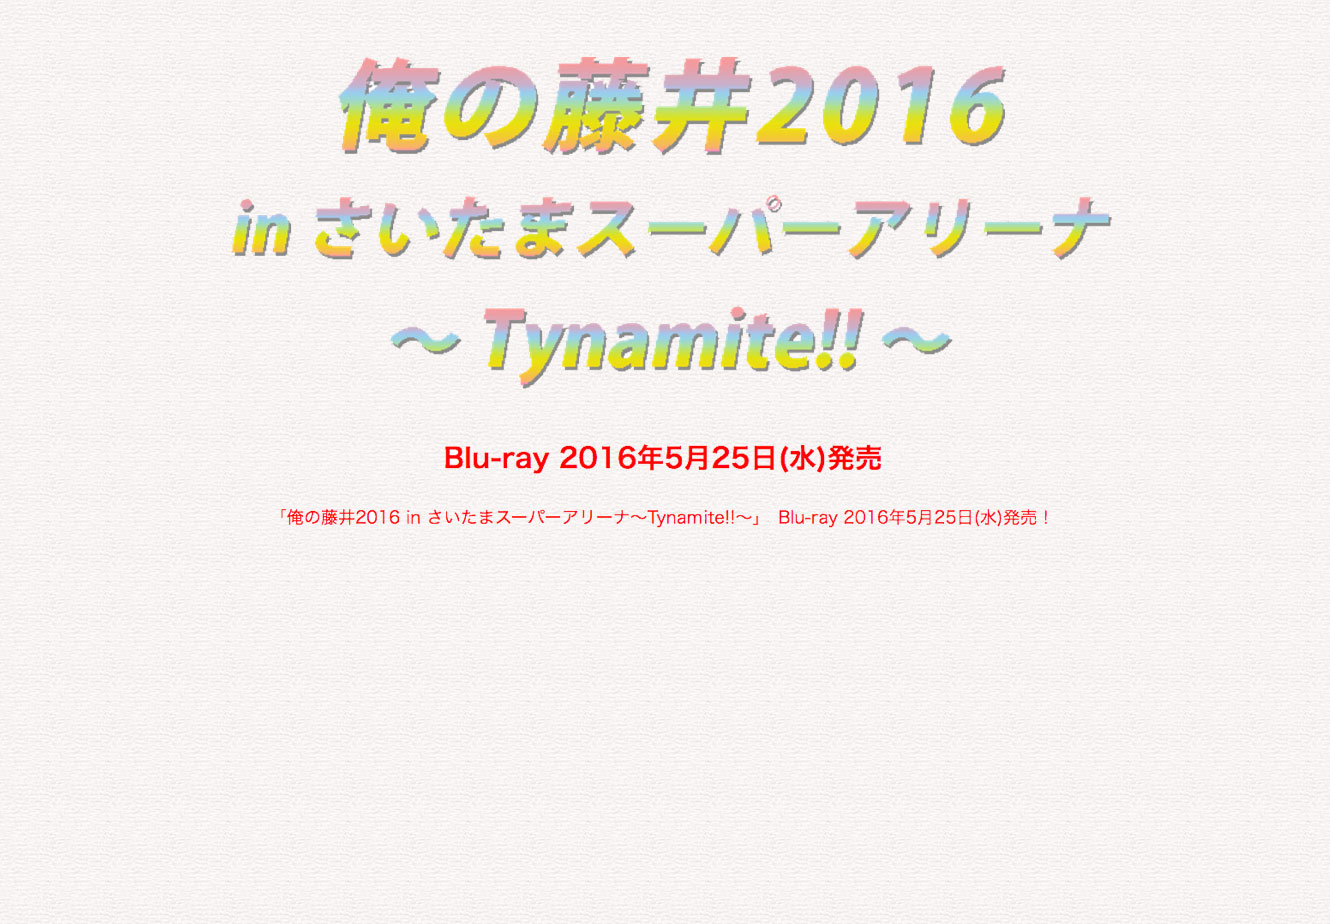 俺の藤井2016 Blu-ray Cell Site / Web